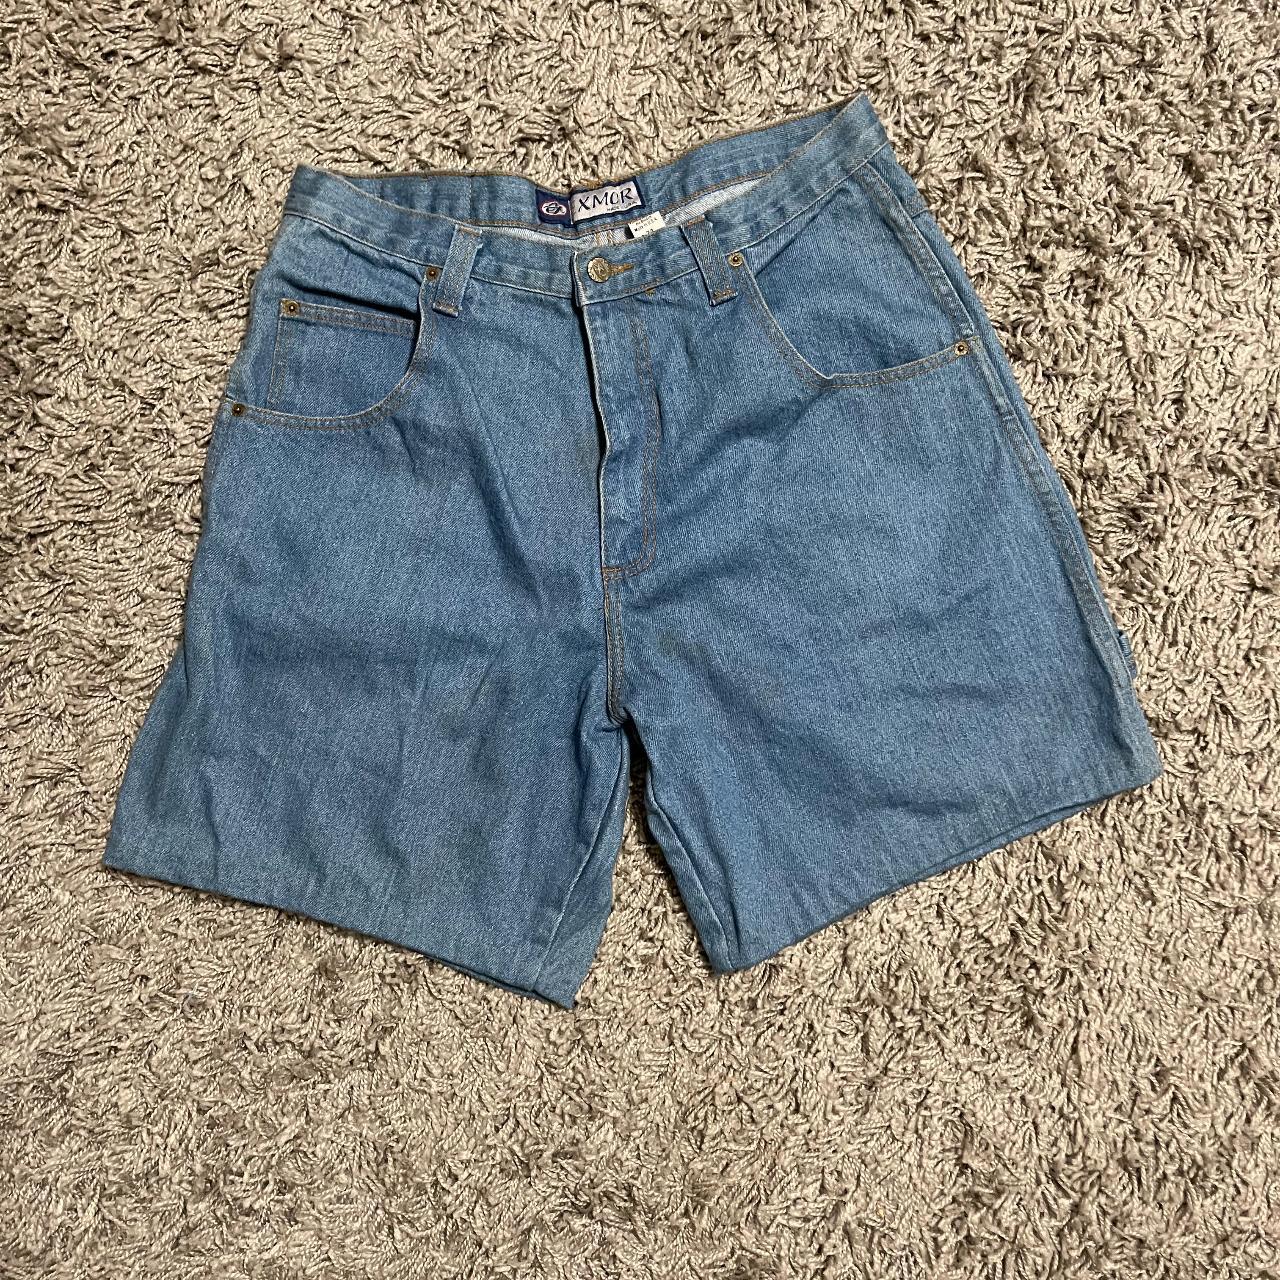 JNCO Men's Blue Shorts | Depop